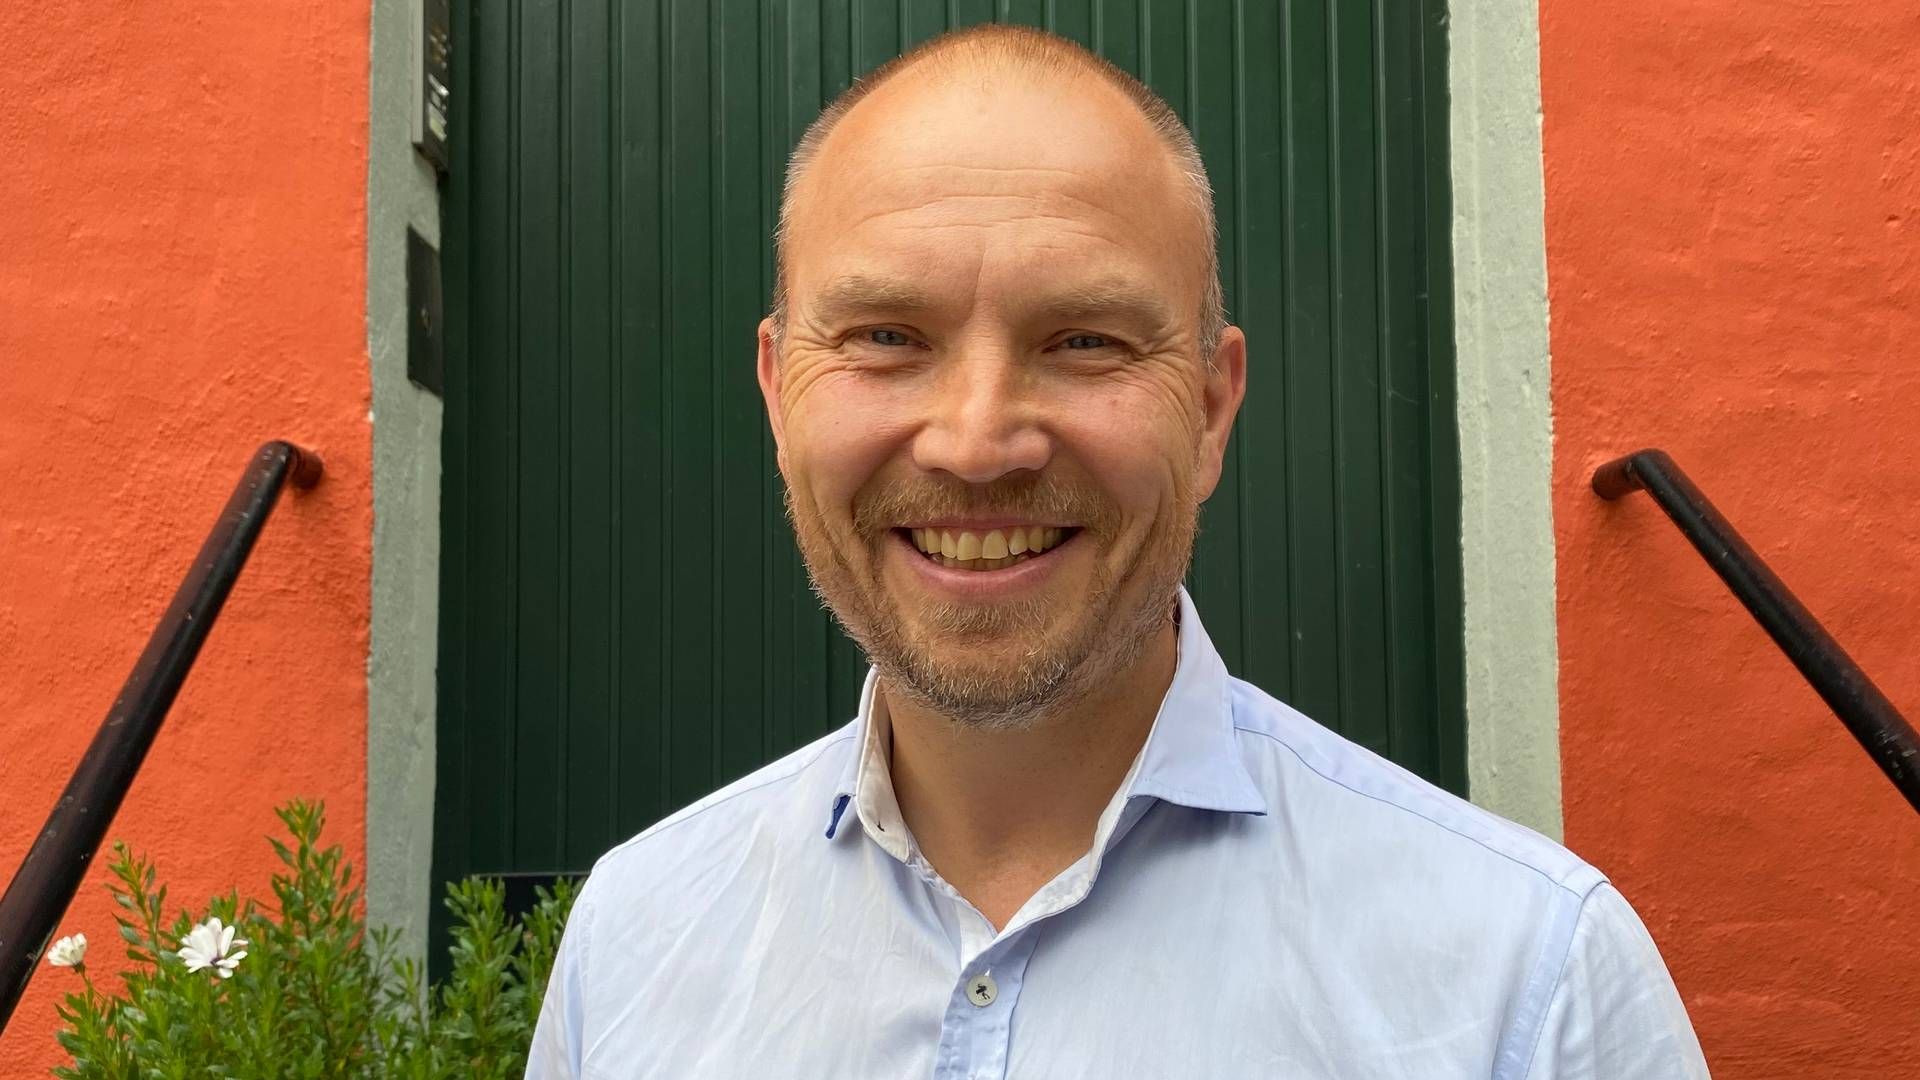 NY ROLLE: Lars Vangen Jordet går fra stillingen som Chief Operating Officer til CEO i Spense. | Foto: Spense